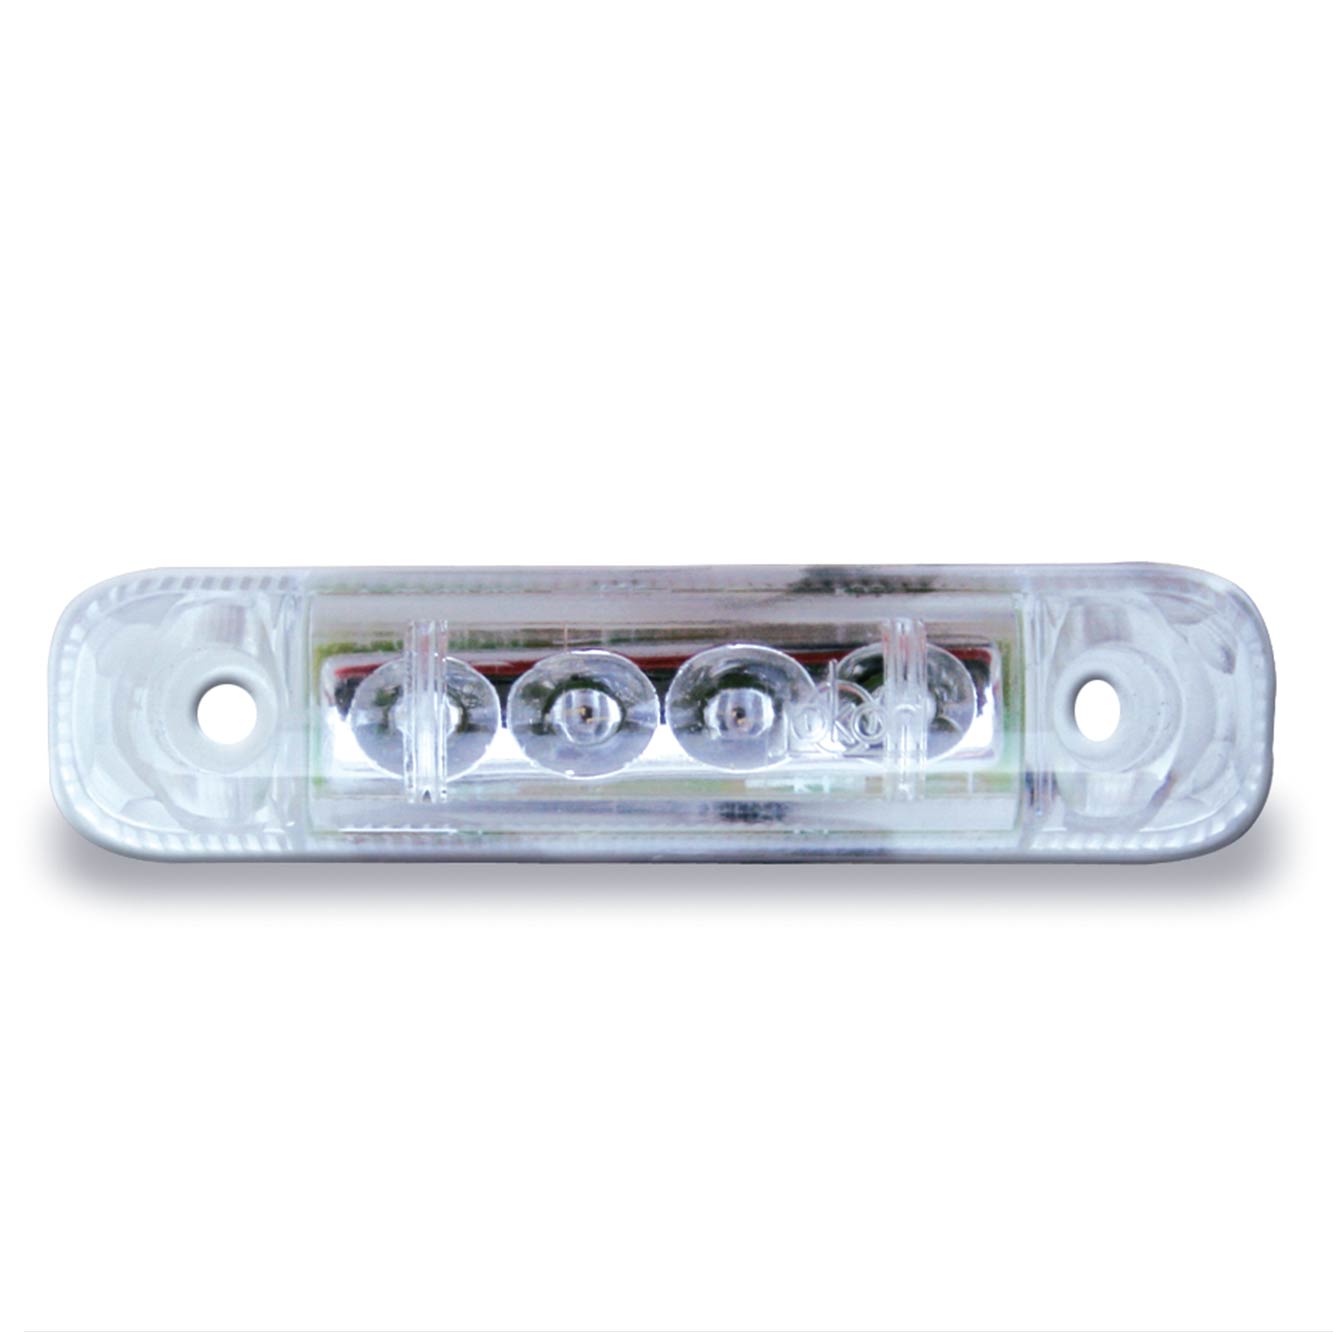 4 LED‘s Tail Light | 24V | Jokon R E2-0205019